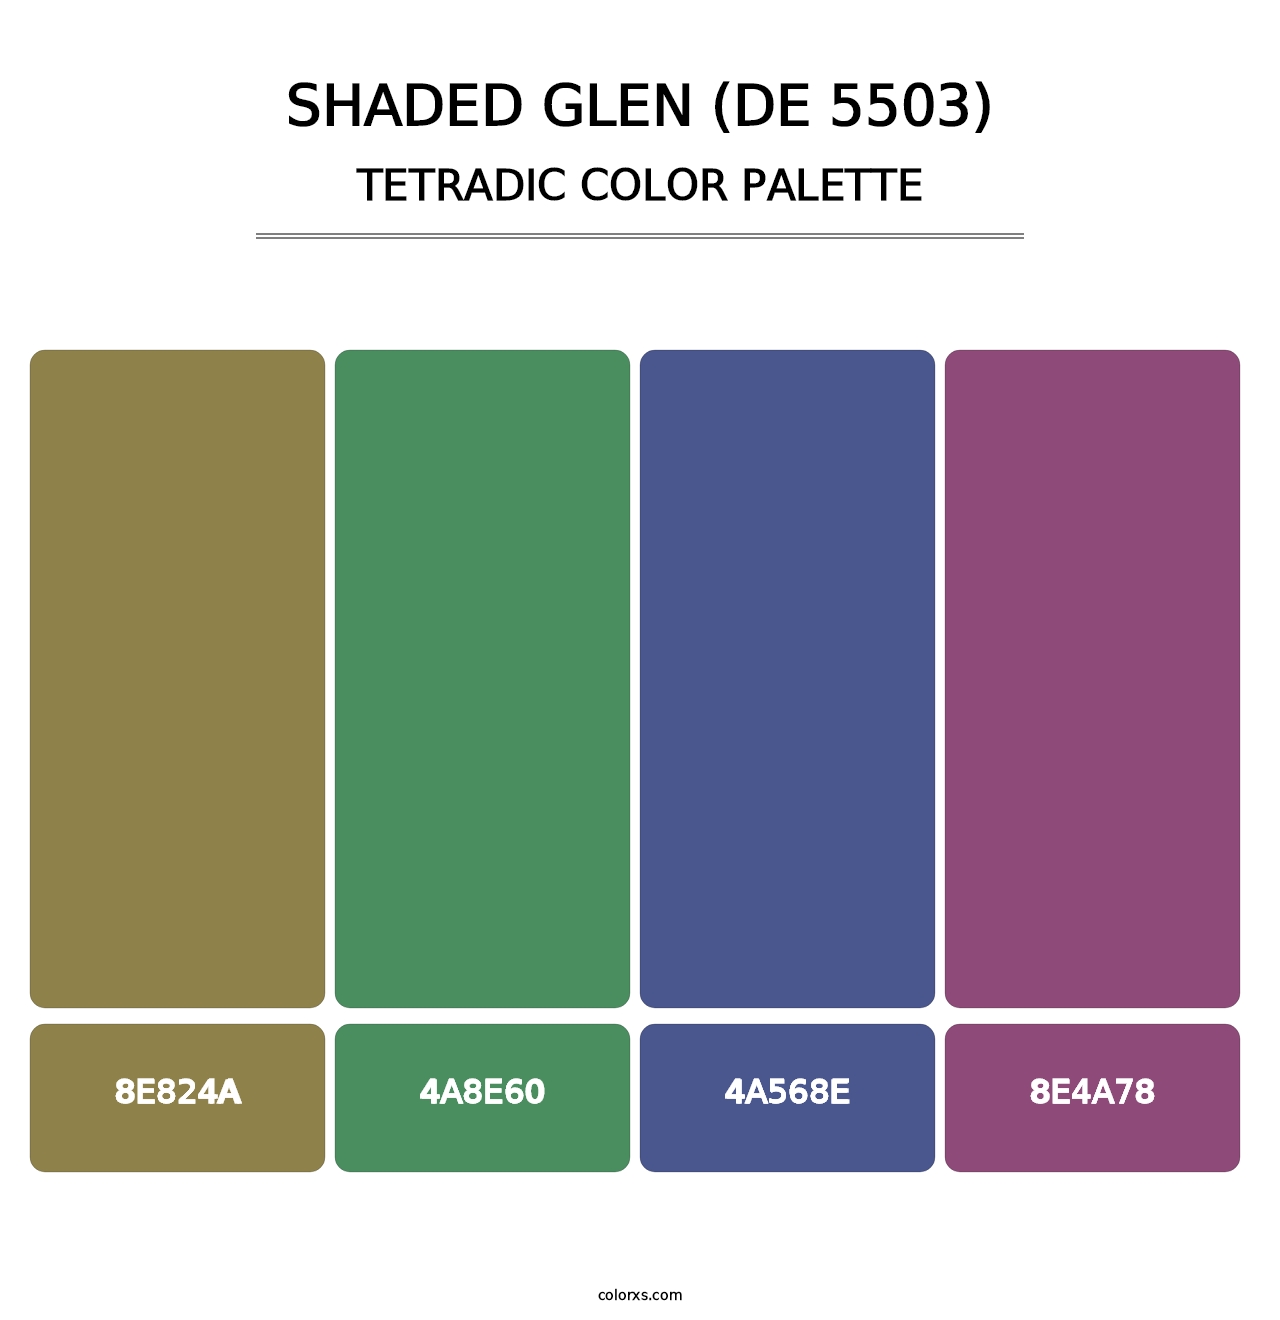 Shaded Glen (DE 5503) - Tetradic Color Palette